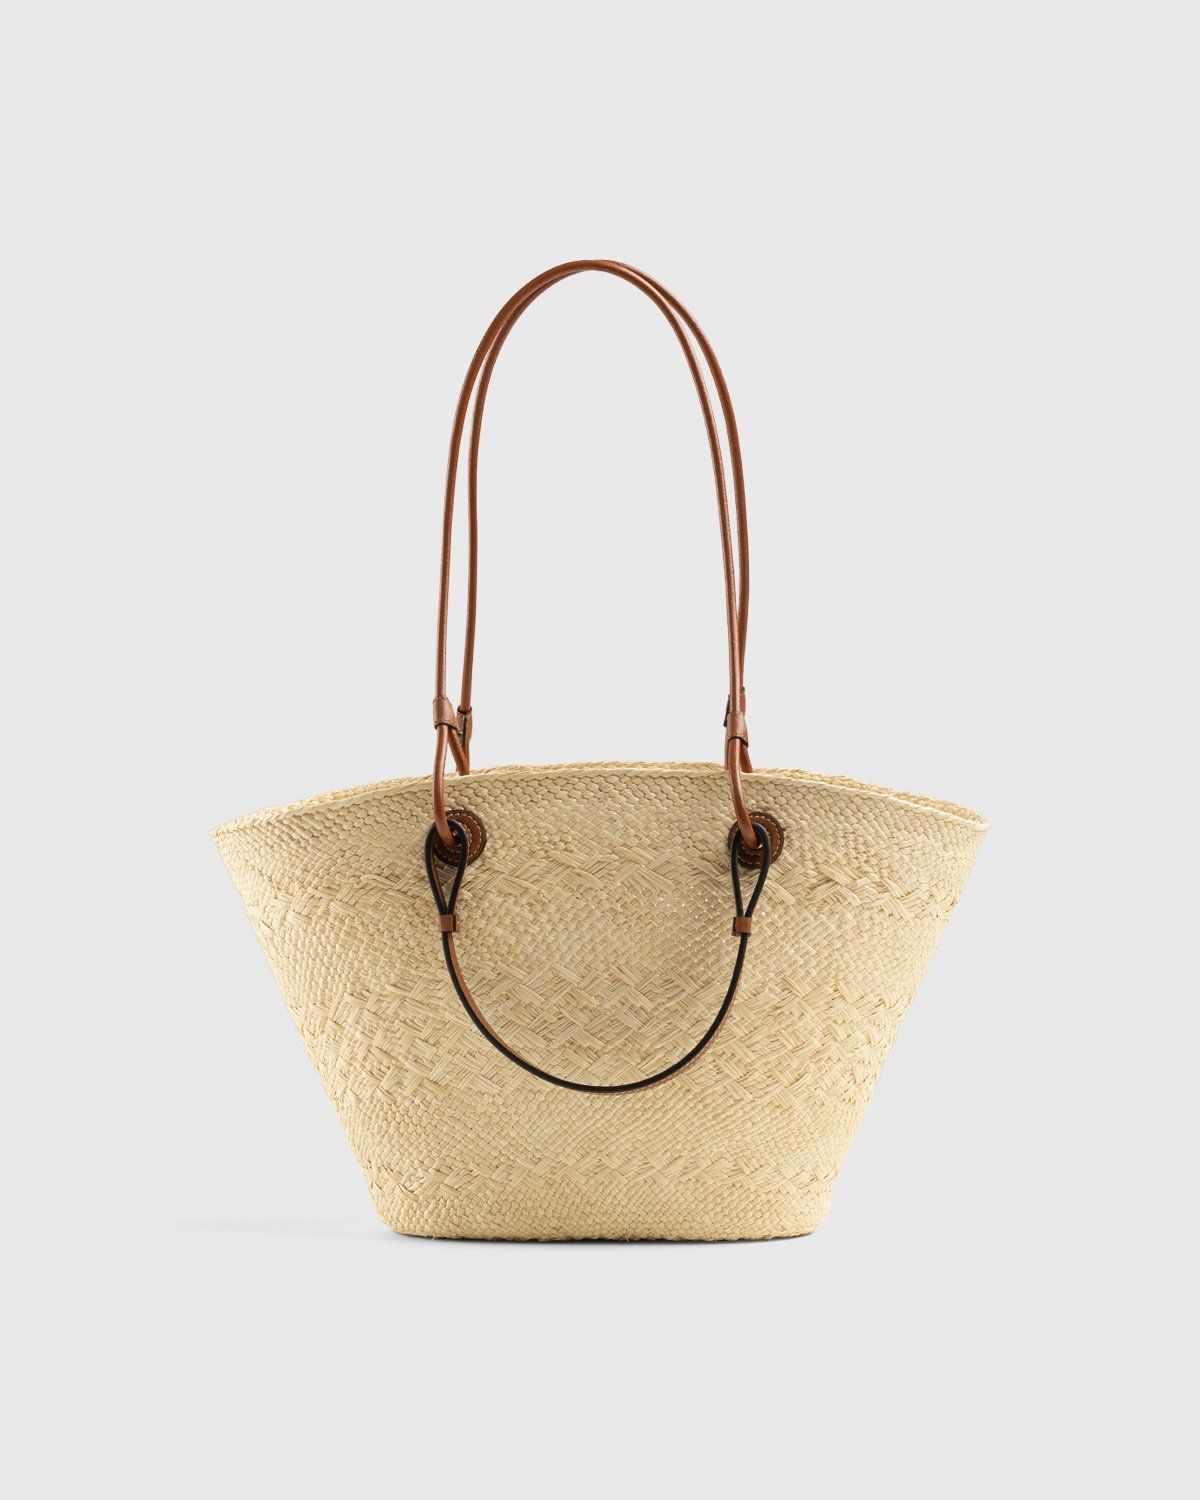 Loewe – Paula's Ibiza Anagram Basket Bag Natural/Tan - Shoulder Bags - Beige - Image 2